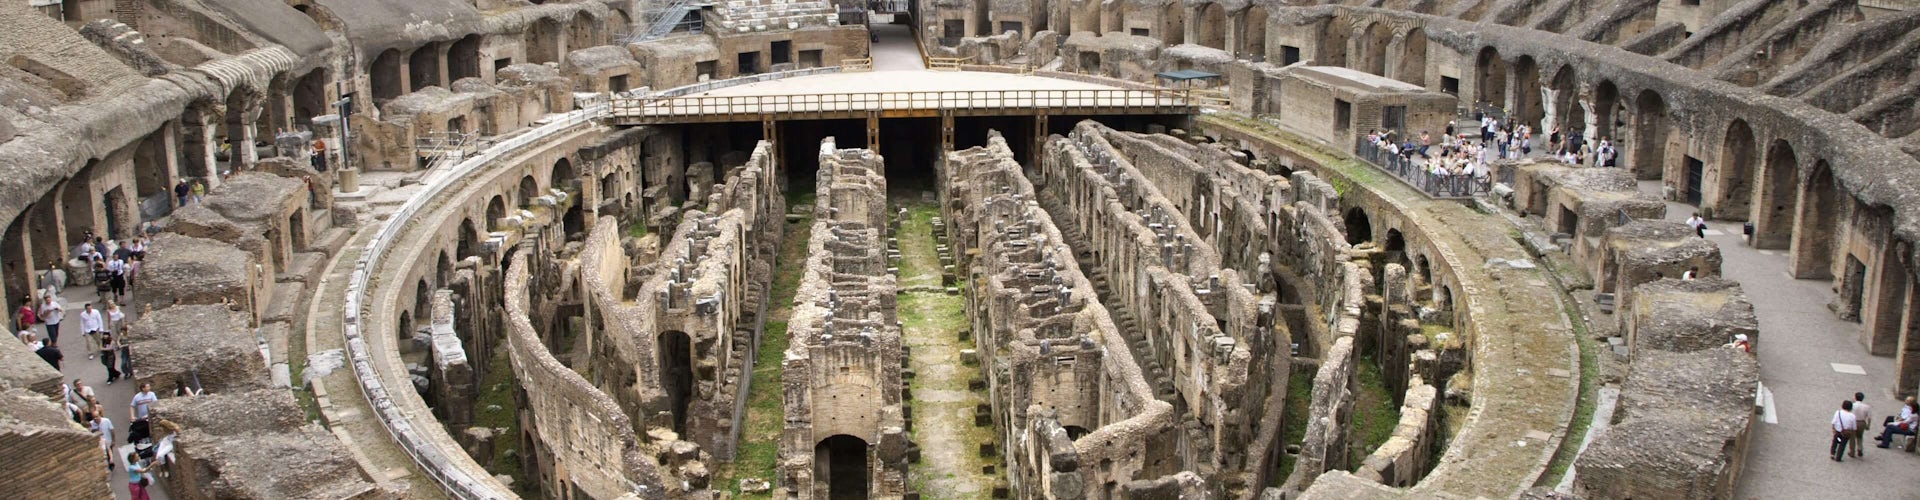 Coliseo Roma 2